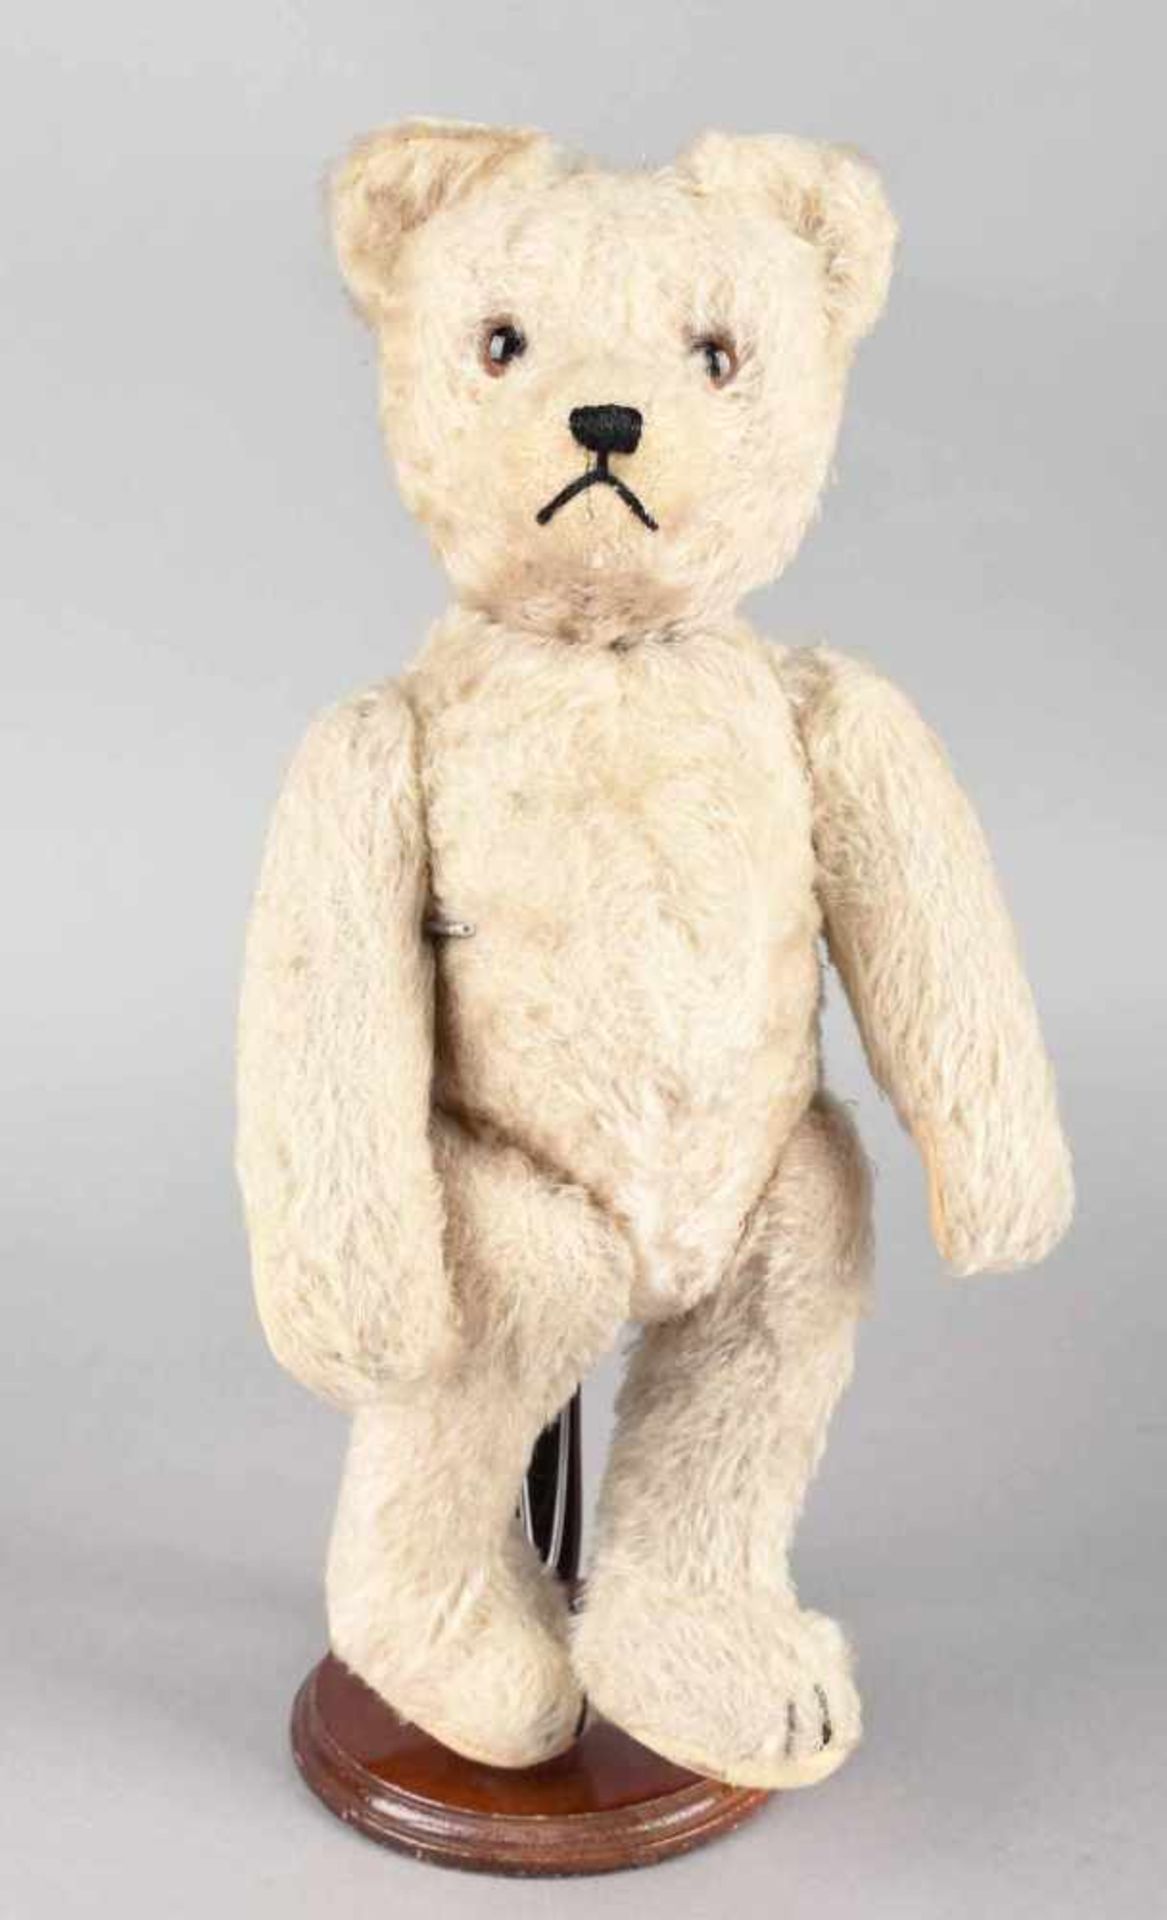 Teddybär Hersteller: Steiff, helles Mohairfell, Körper strohgefüllt, Glasaugen, gestickte Schnauze - Bild 2 aus 2